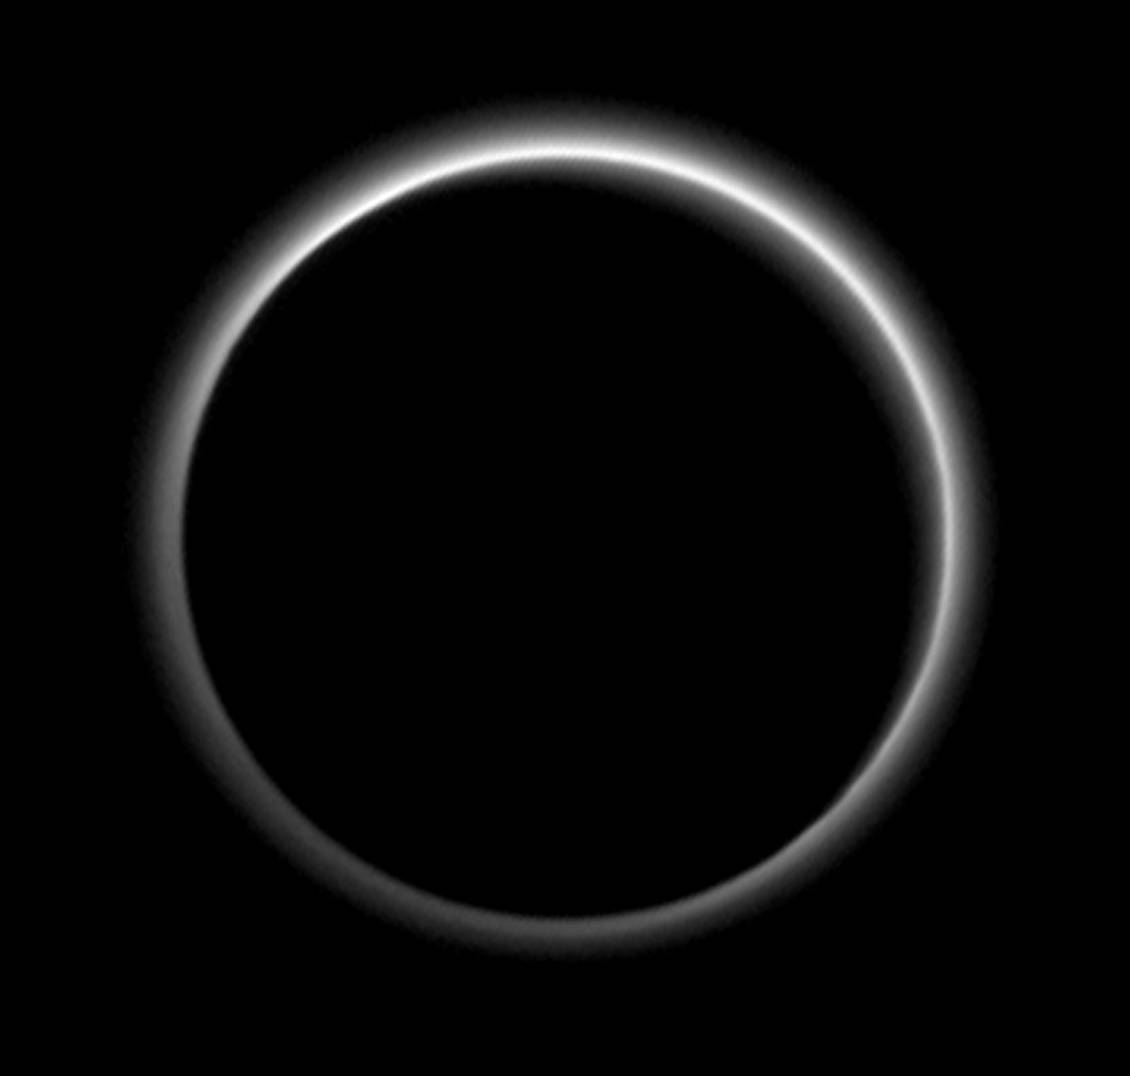 Die Atmosphäre Plutos im Gegenlicht, als die Raumsonde New Horizons schon 2 Millionen Kilometer von Zwergplaneten entfernt war. Die Dunstschicht um Pluto ist fünfmal höher als erwartet wurde. Bis zu einem gewissen Grad kann man von einem „Pluto-Wetter“ sprechen. Bild: NASA/JHUAPL/SwRI 